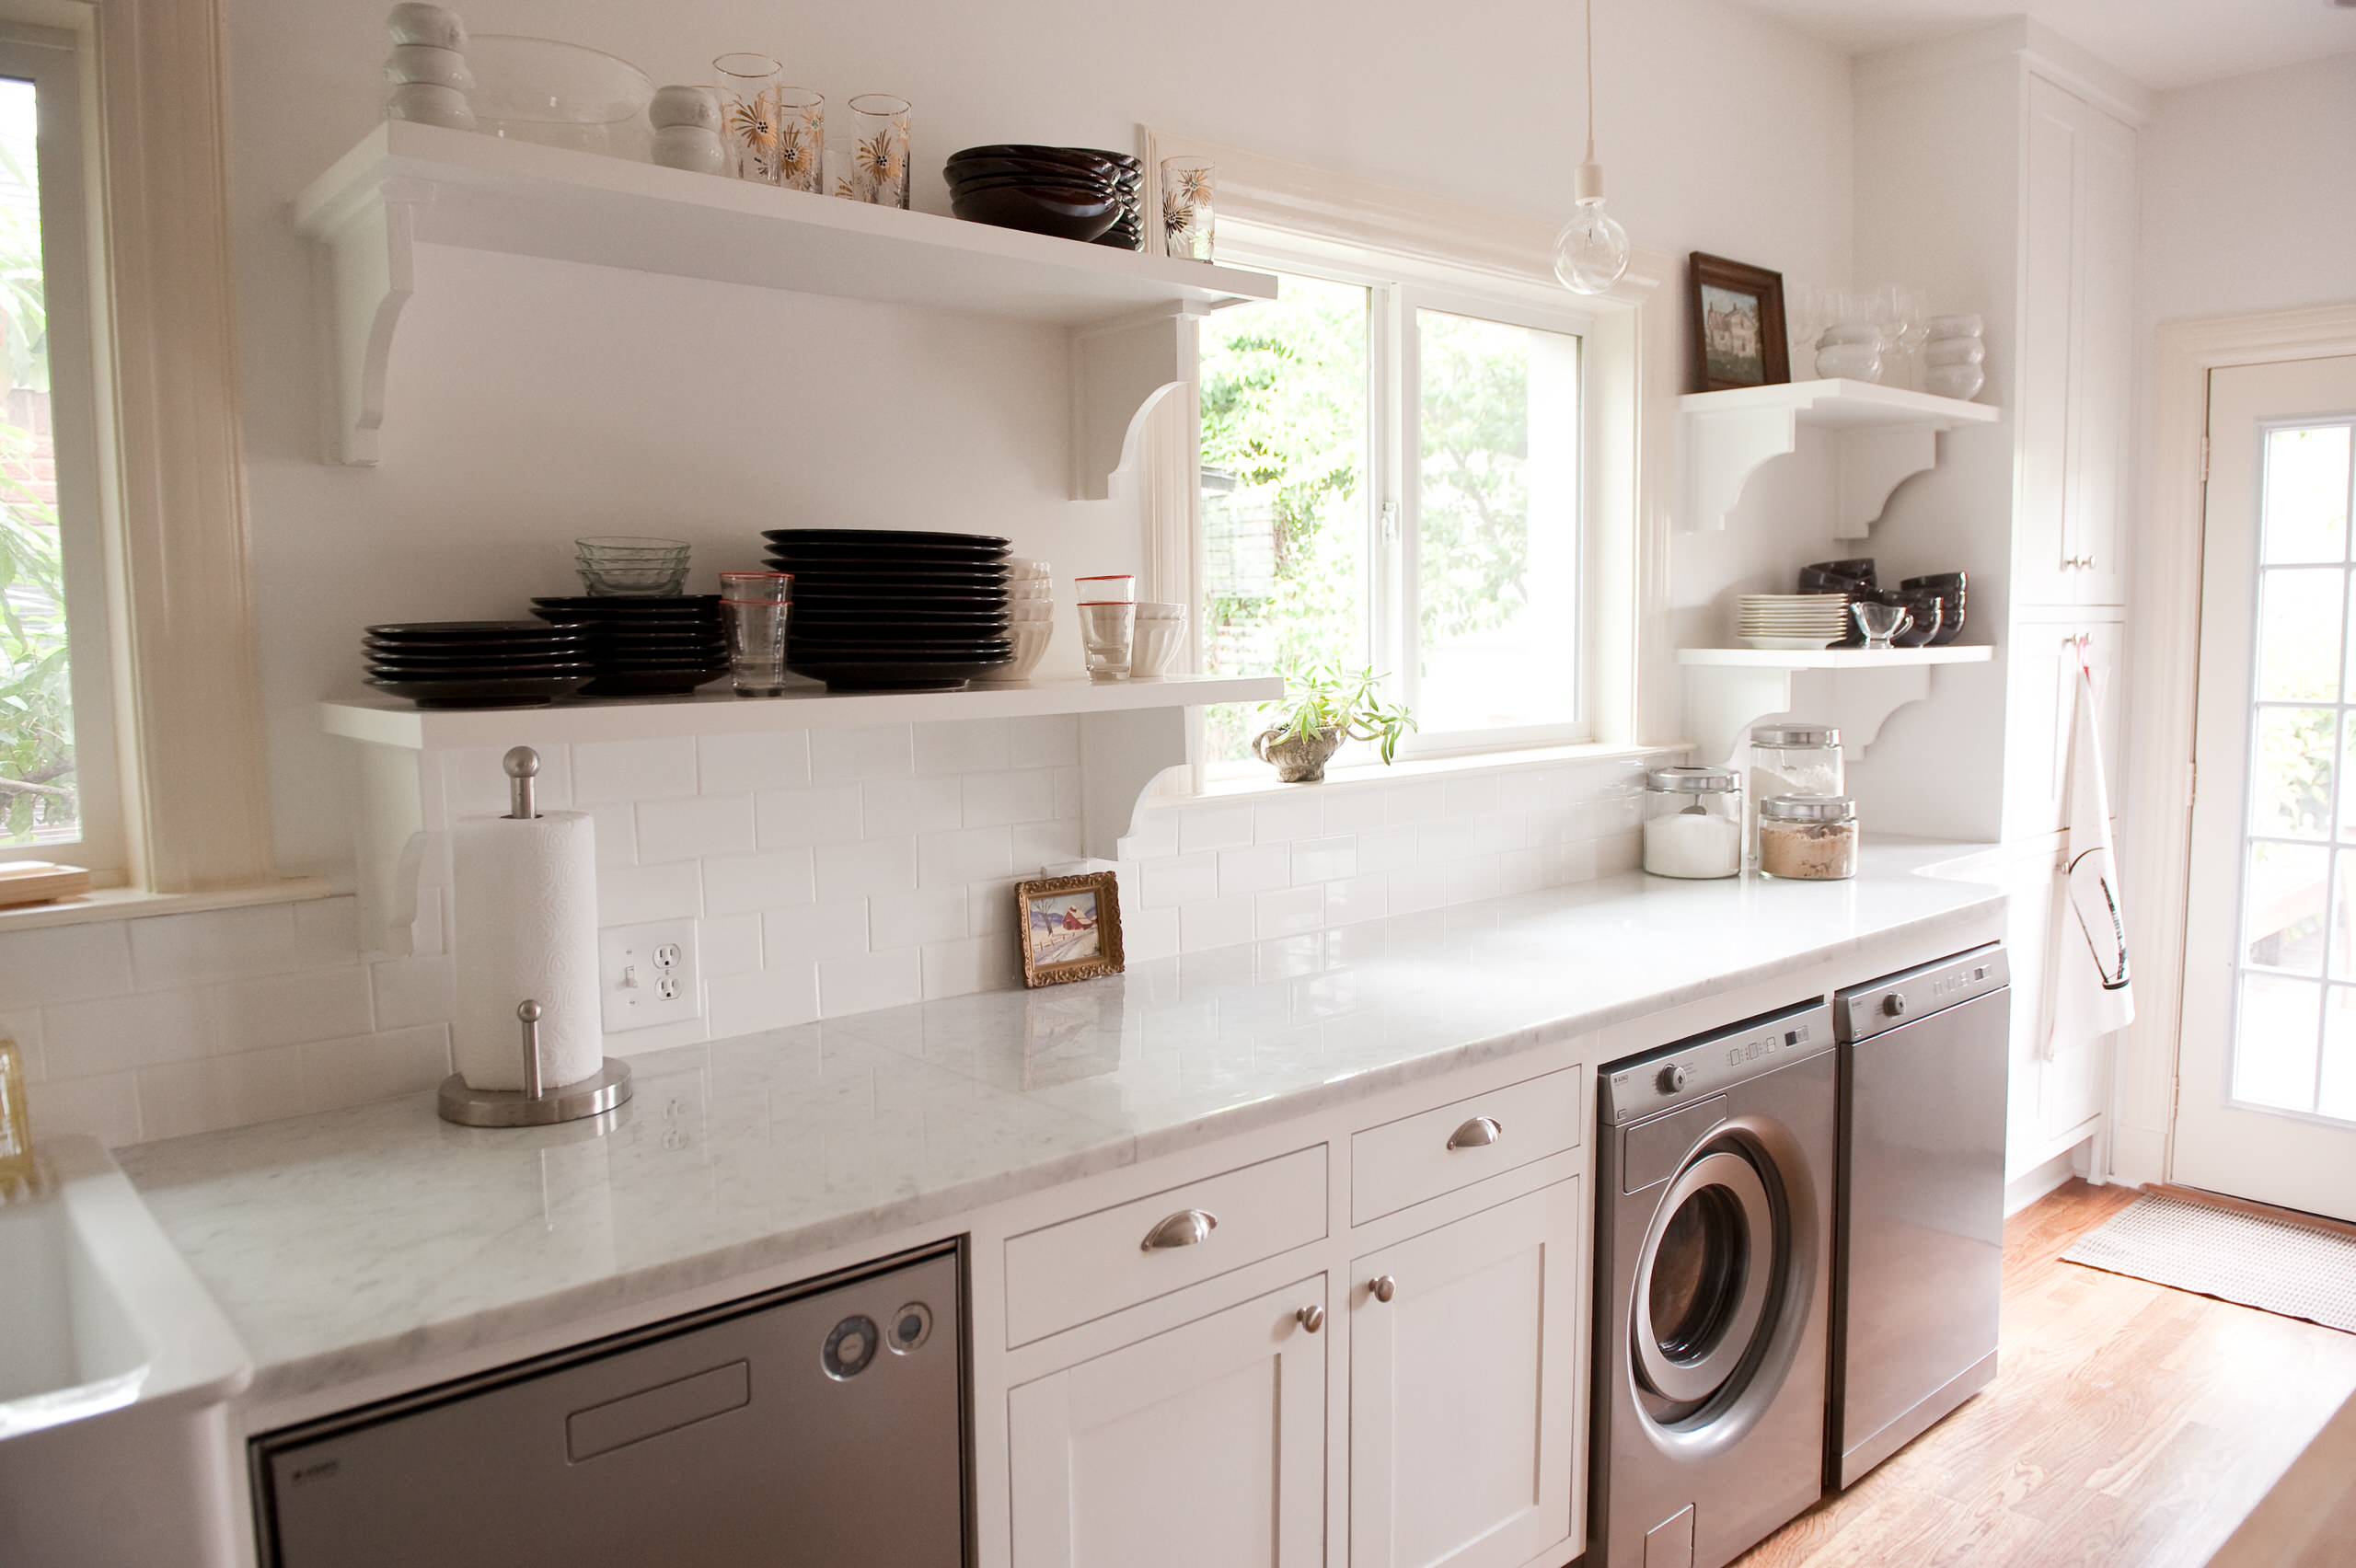 Washer And Dryer In Kitchen - Photos & Ideas | Houzz